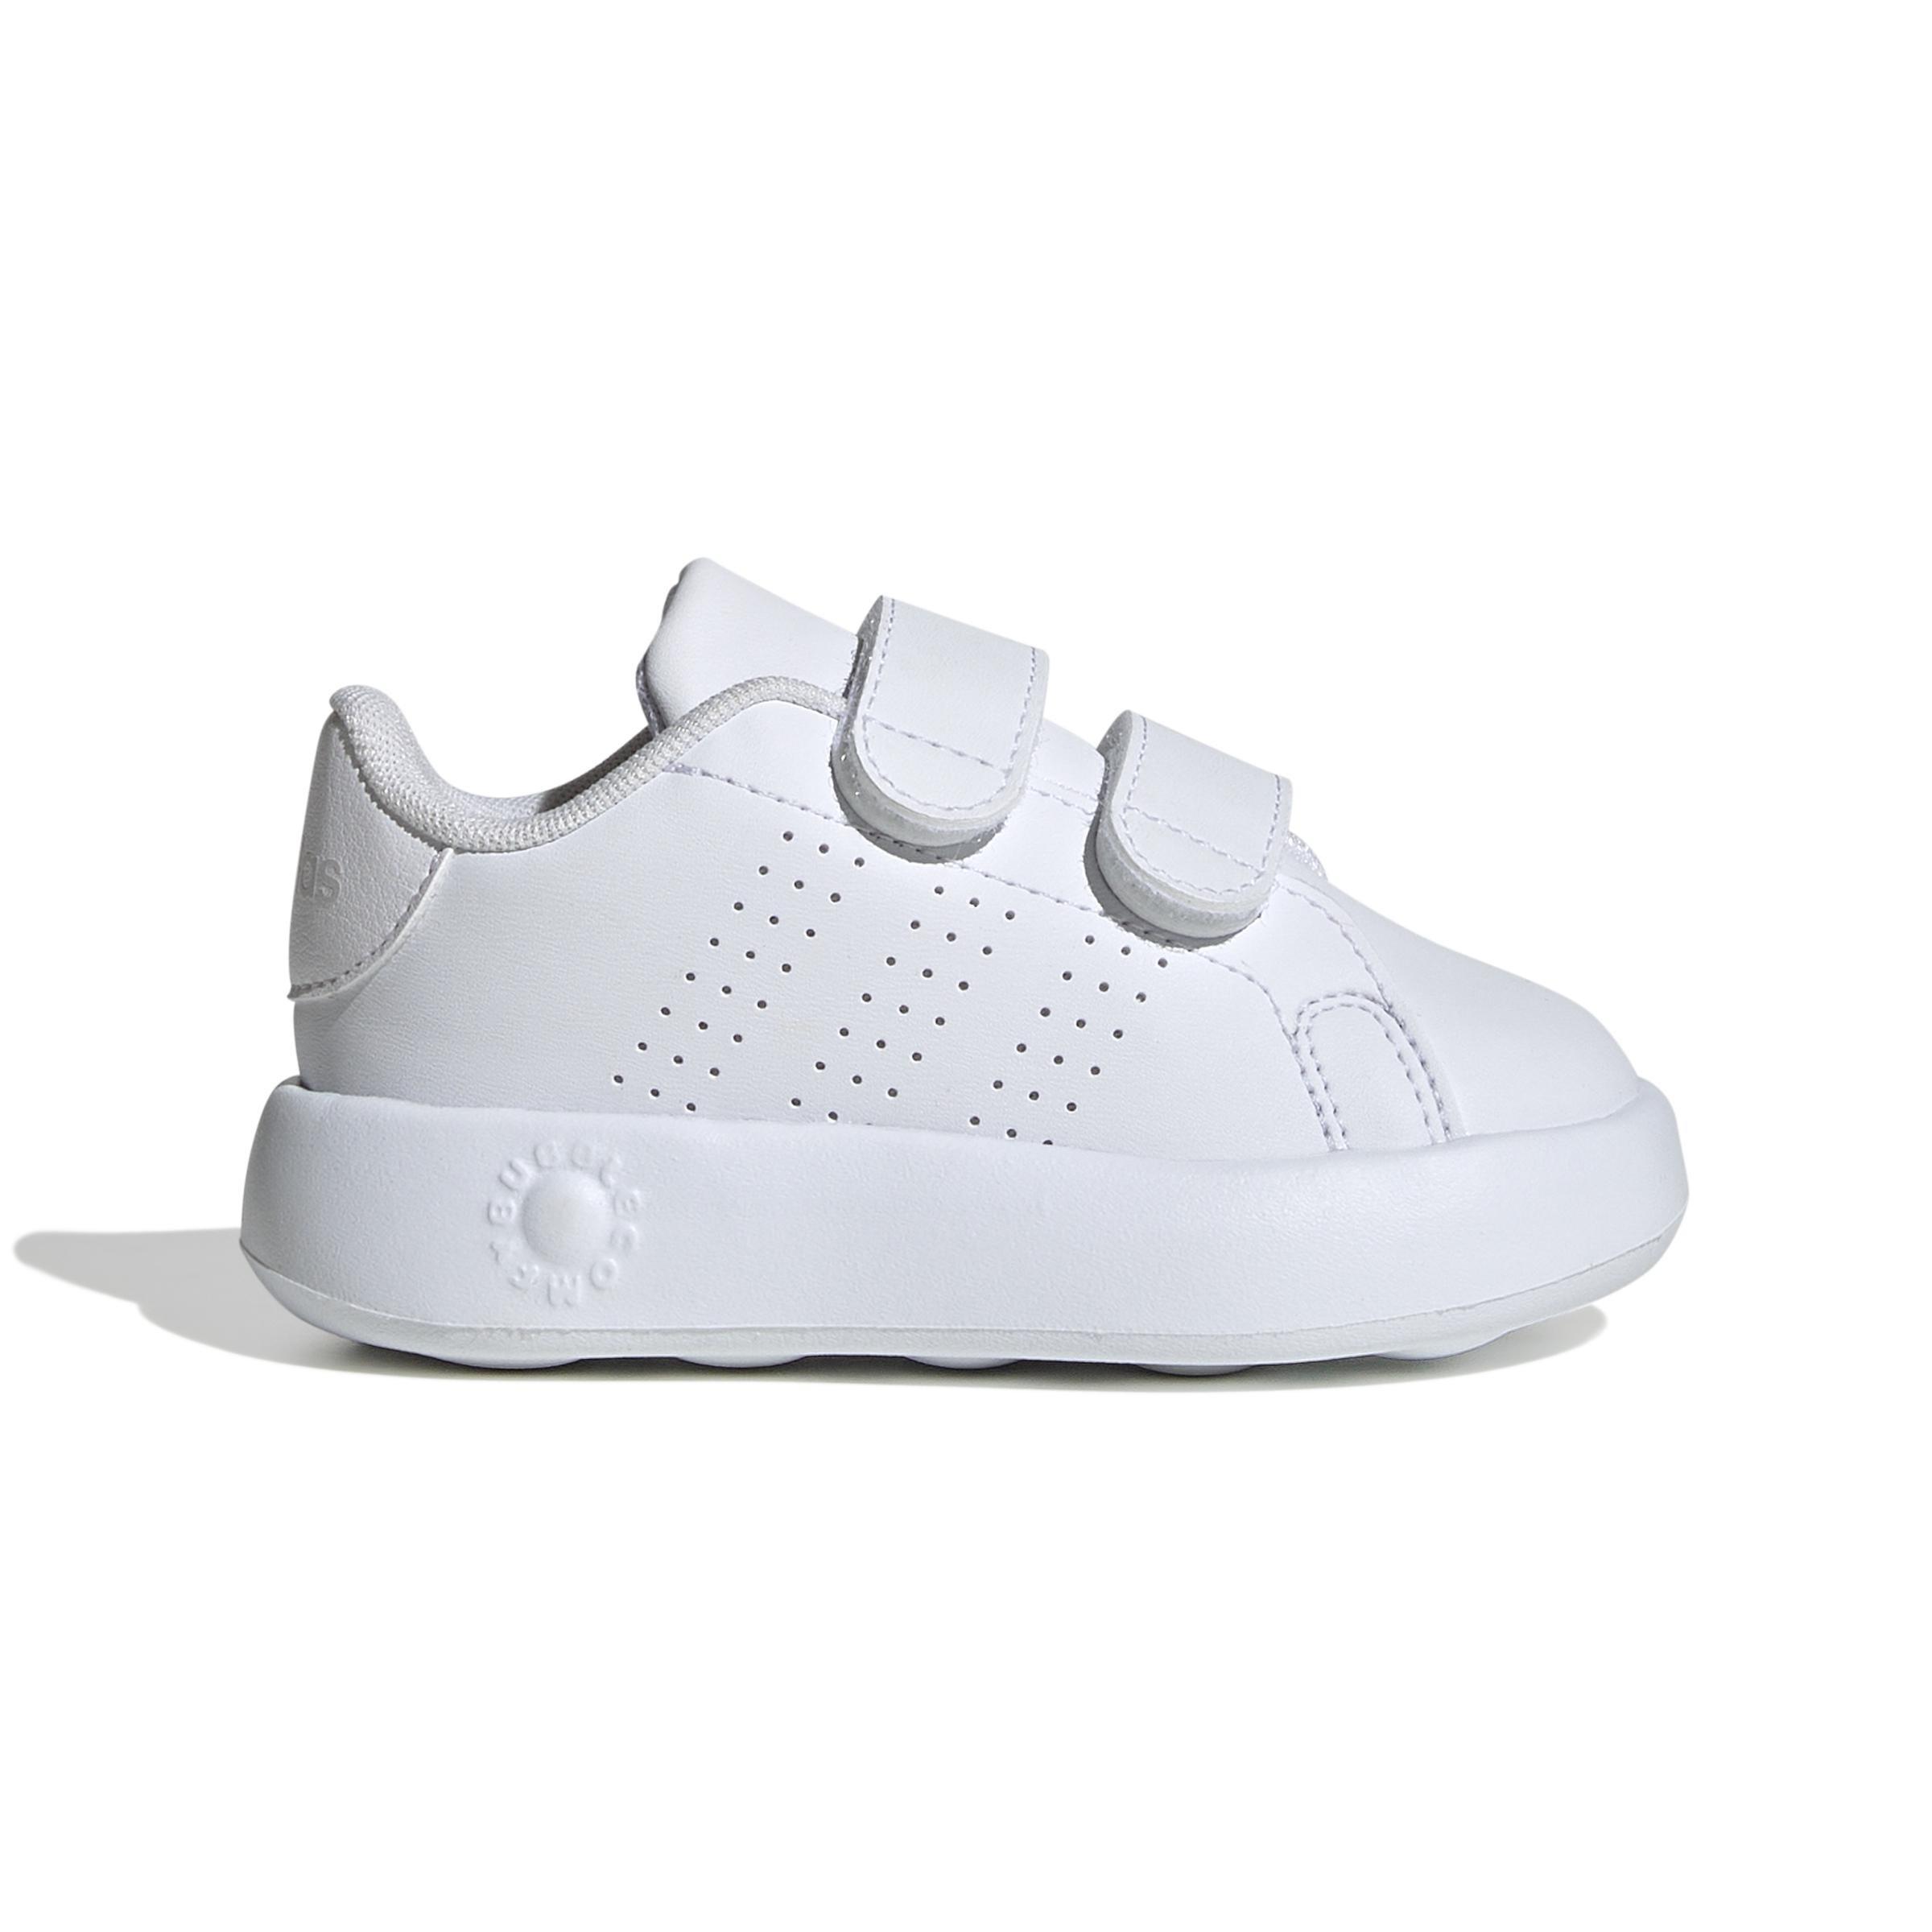 adidas - Kids Unisex Advantage Shoes, White